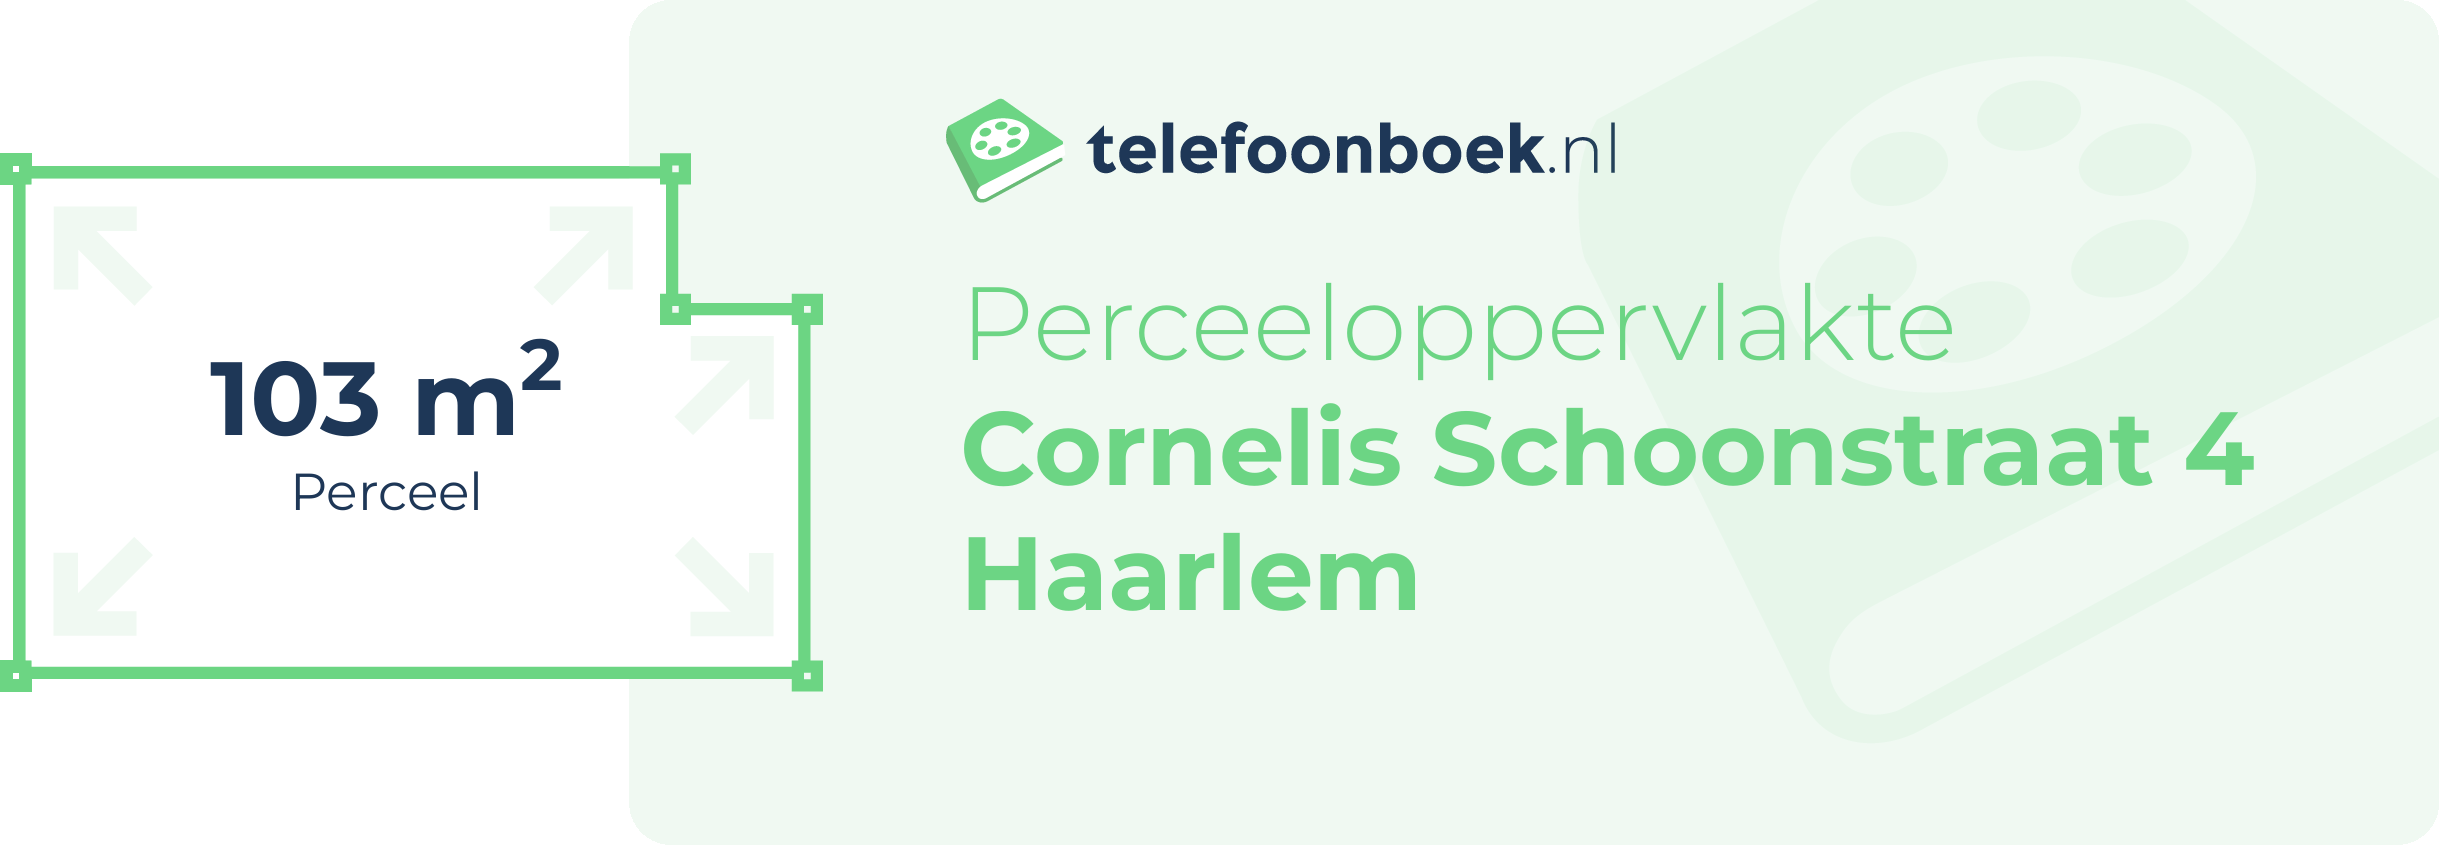 Perceeloppervlakte Cornelis Schoonstraat 4 Haarlem